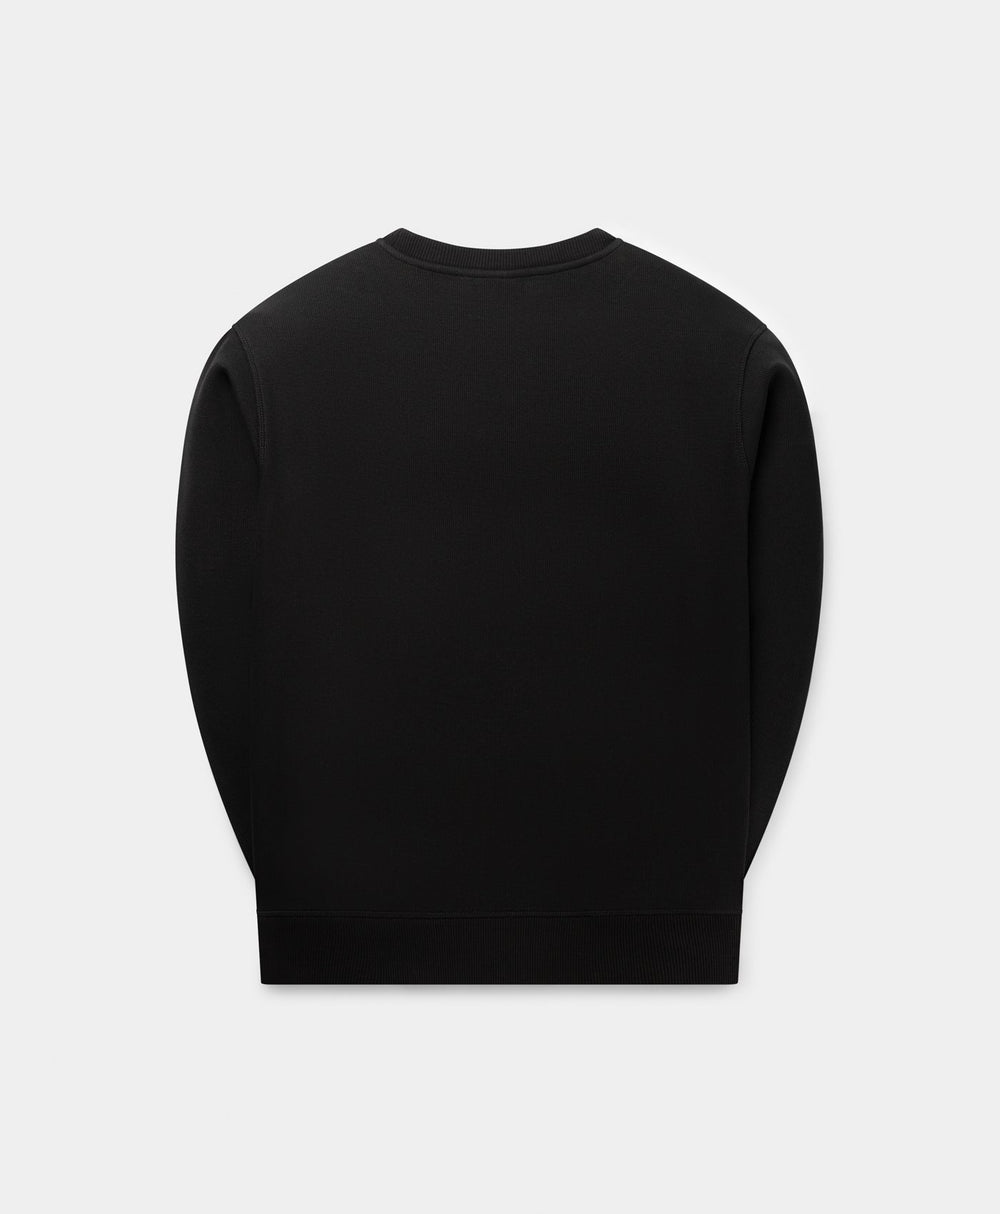 DP - Black Mono Rib Sweater - Packshot - rear